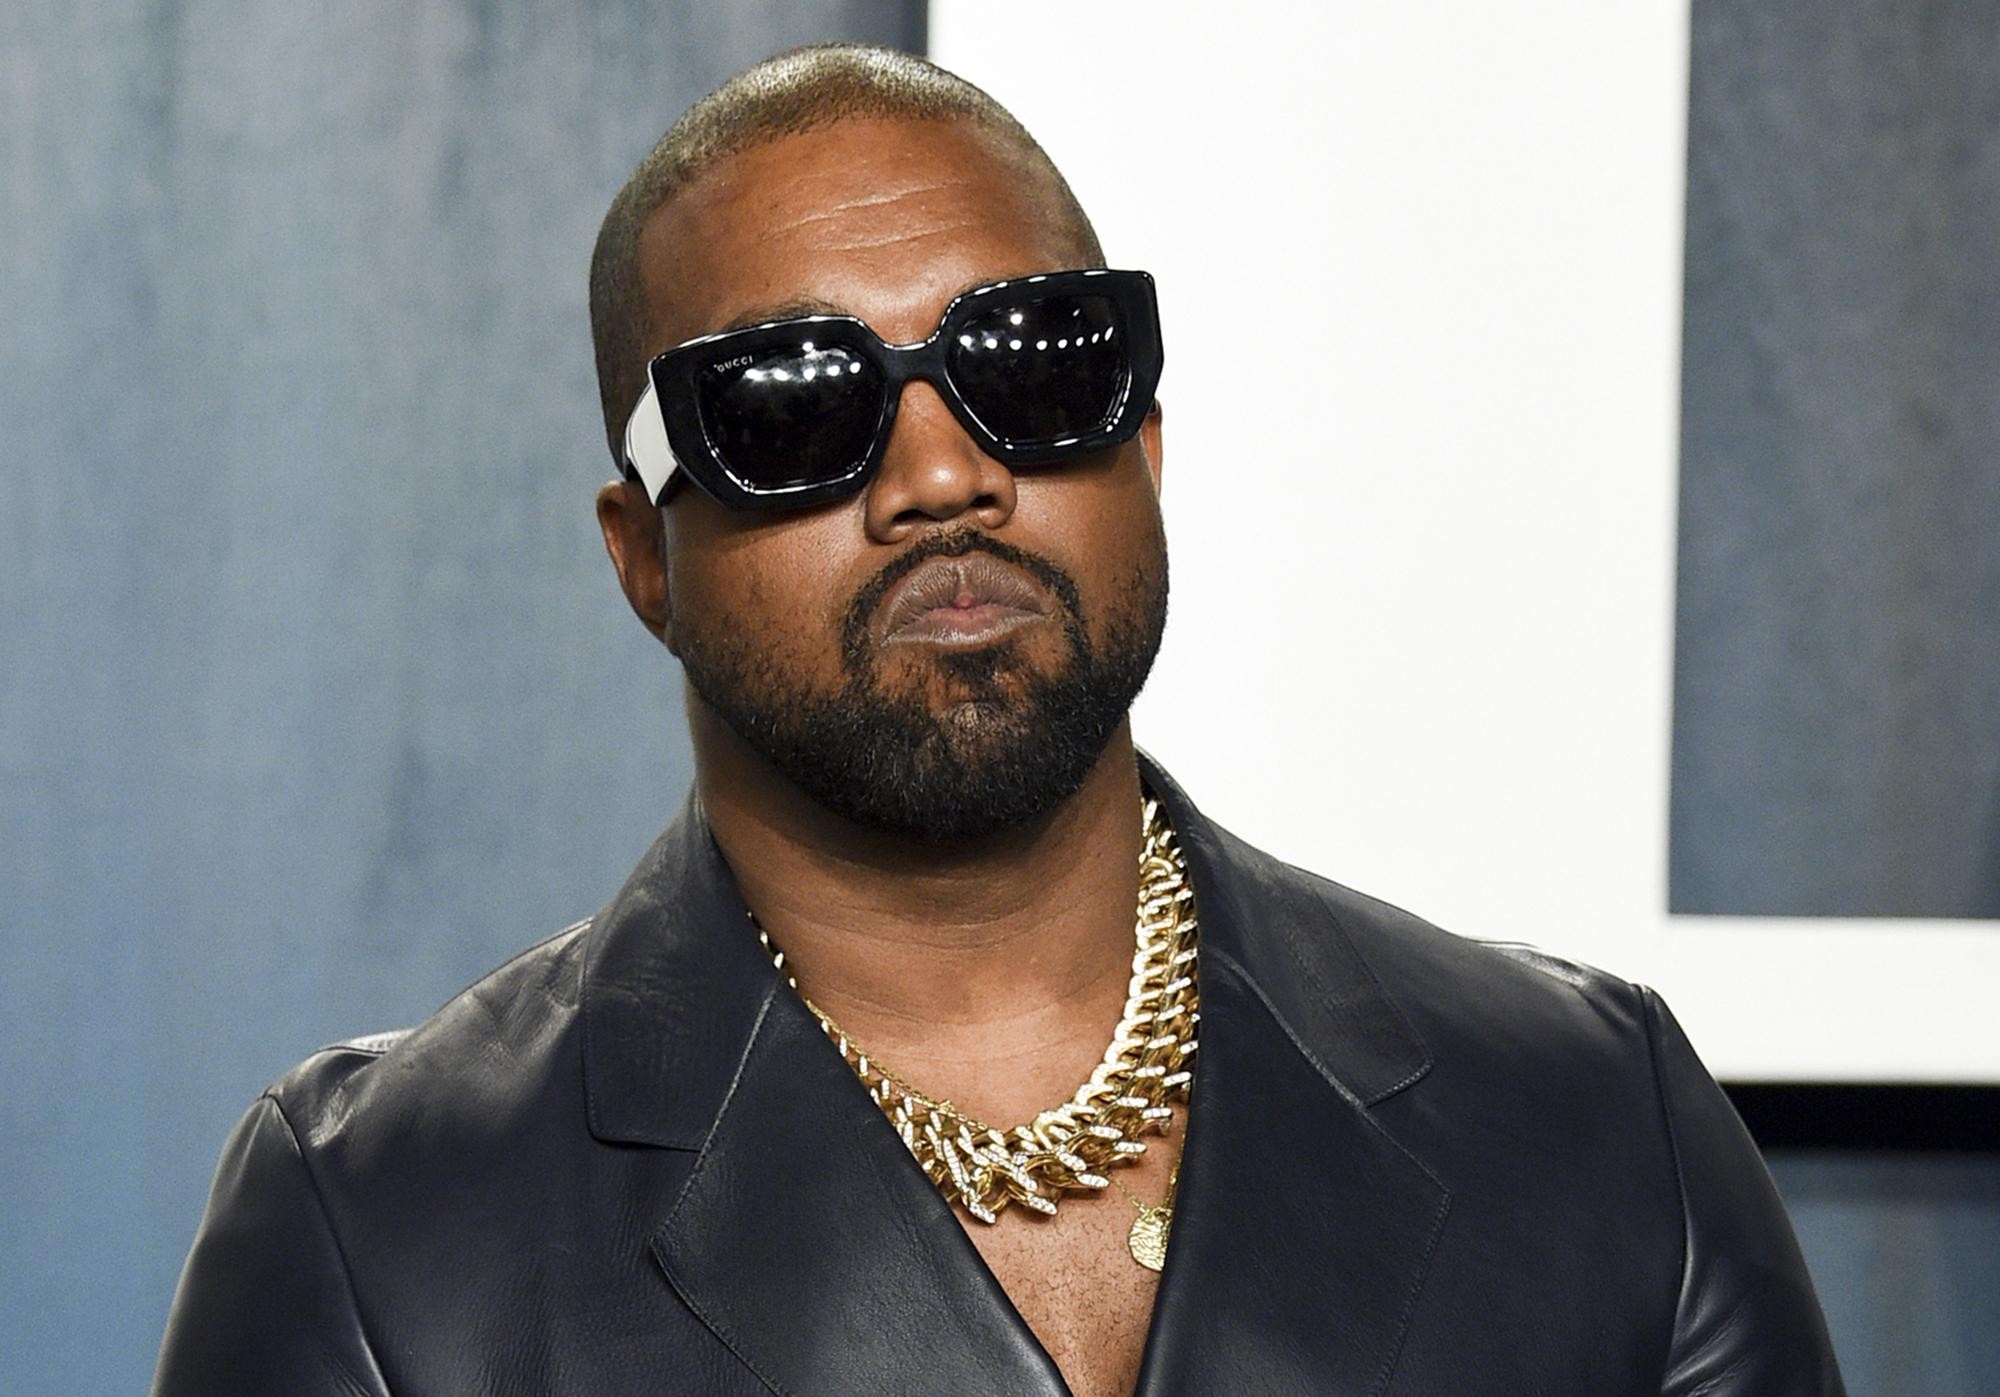 Kanye West Đang Lên Kế Hoạch Ra Mắt Các Dòng Sản Phẩm Công Nghệ Liên Quan Đến “Donda”